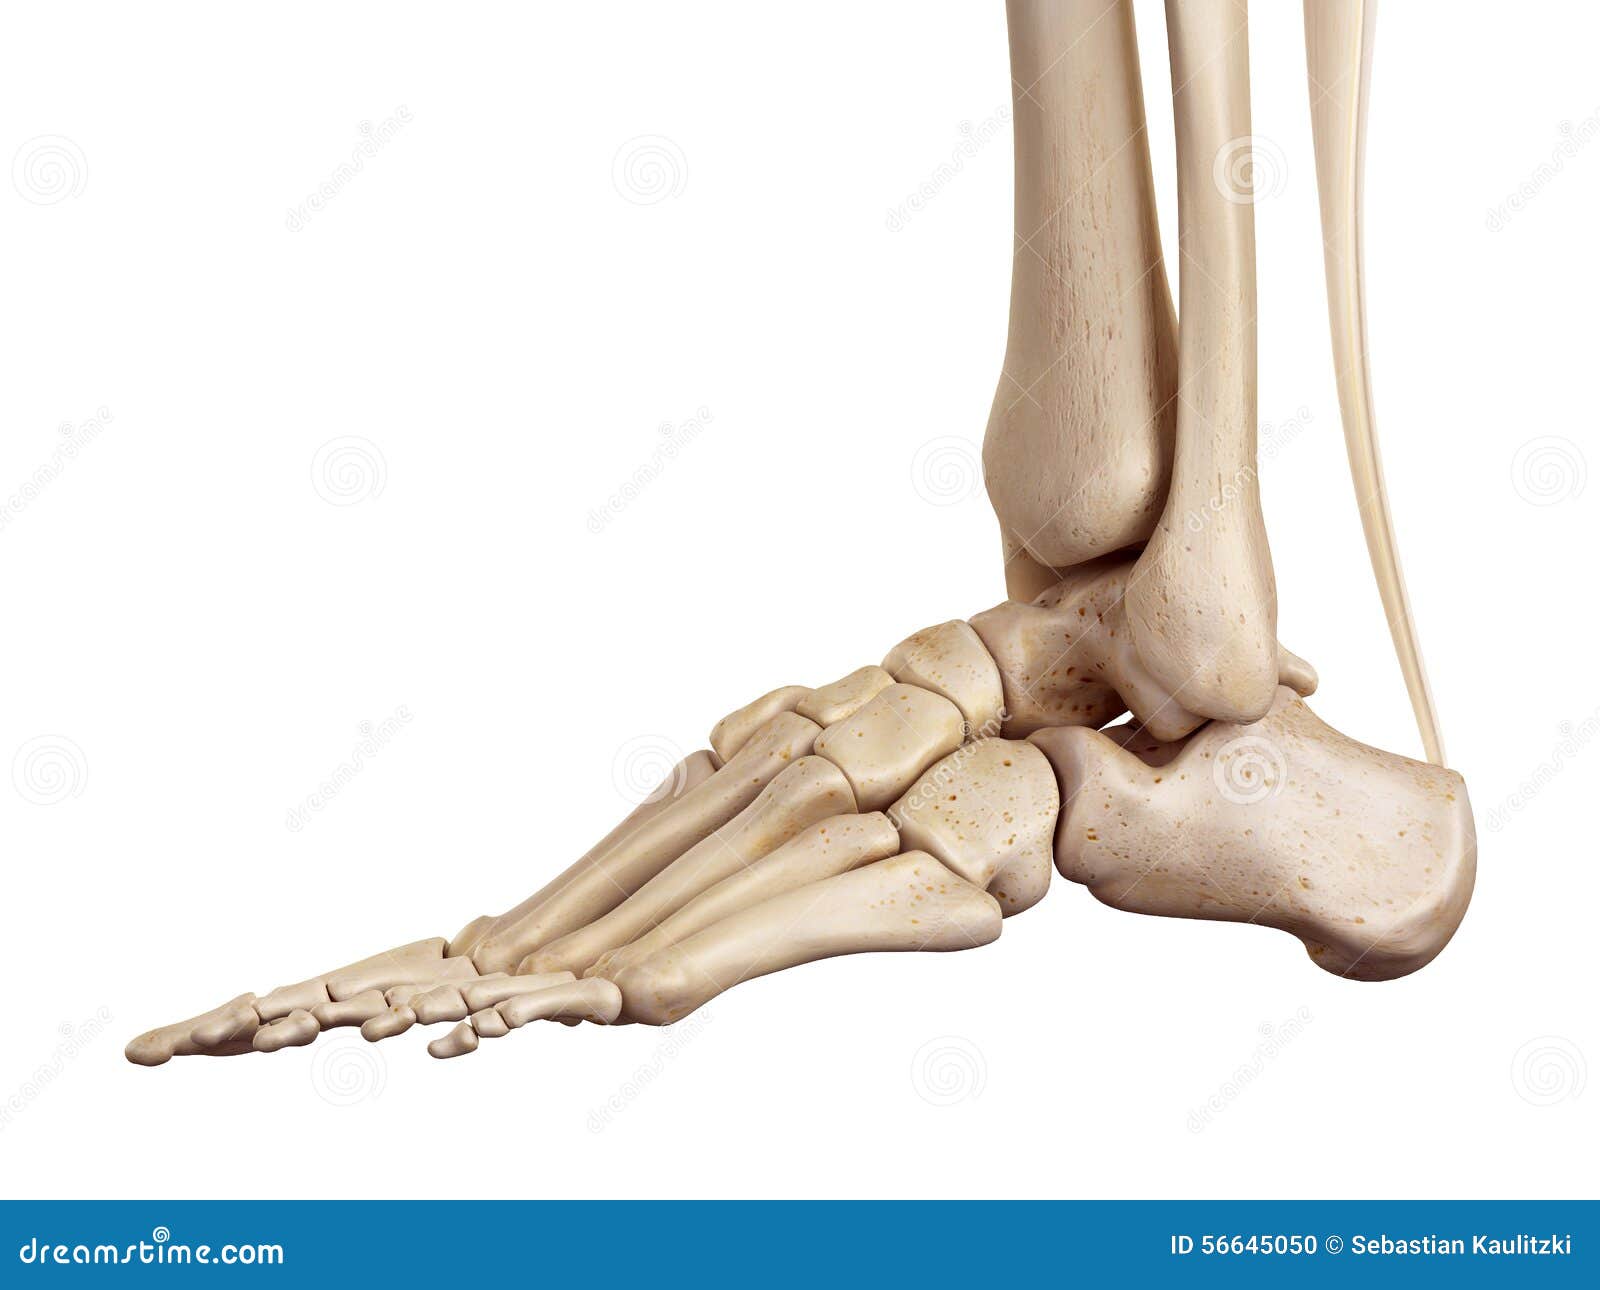 the achilles tendon